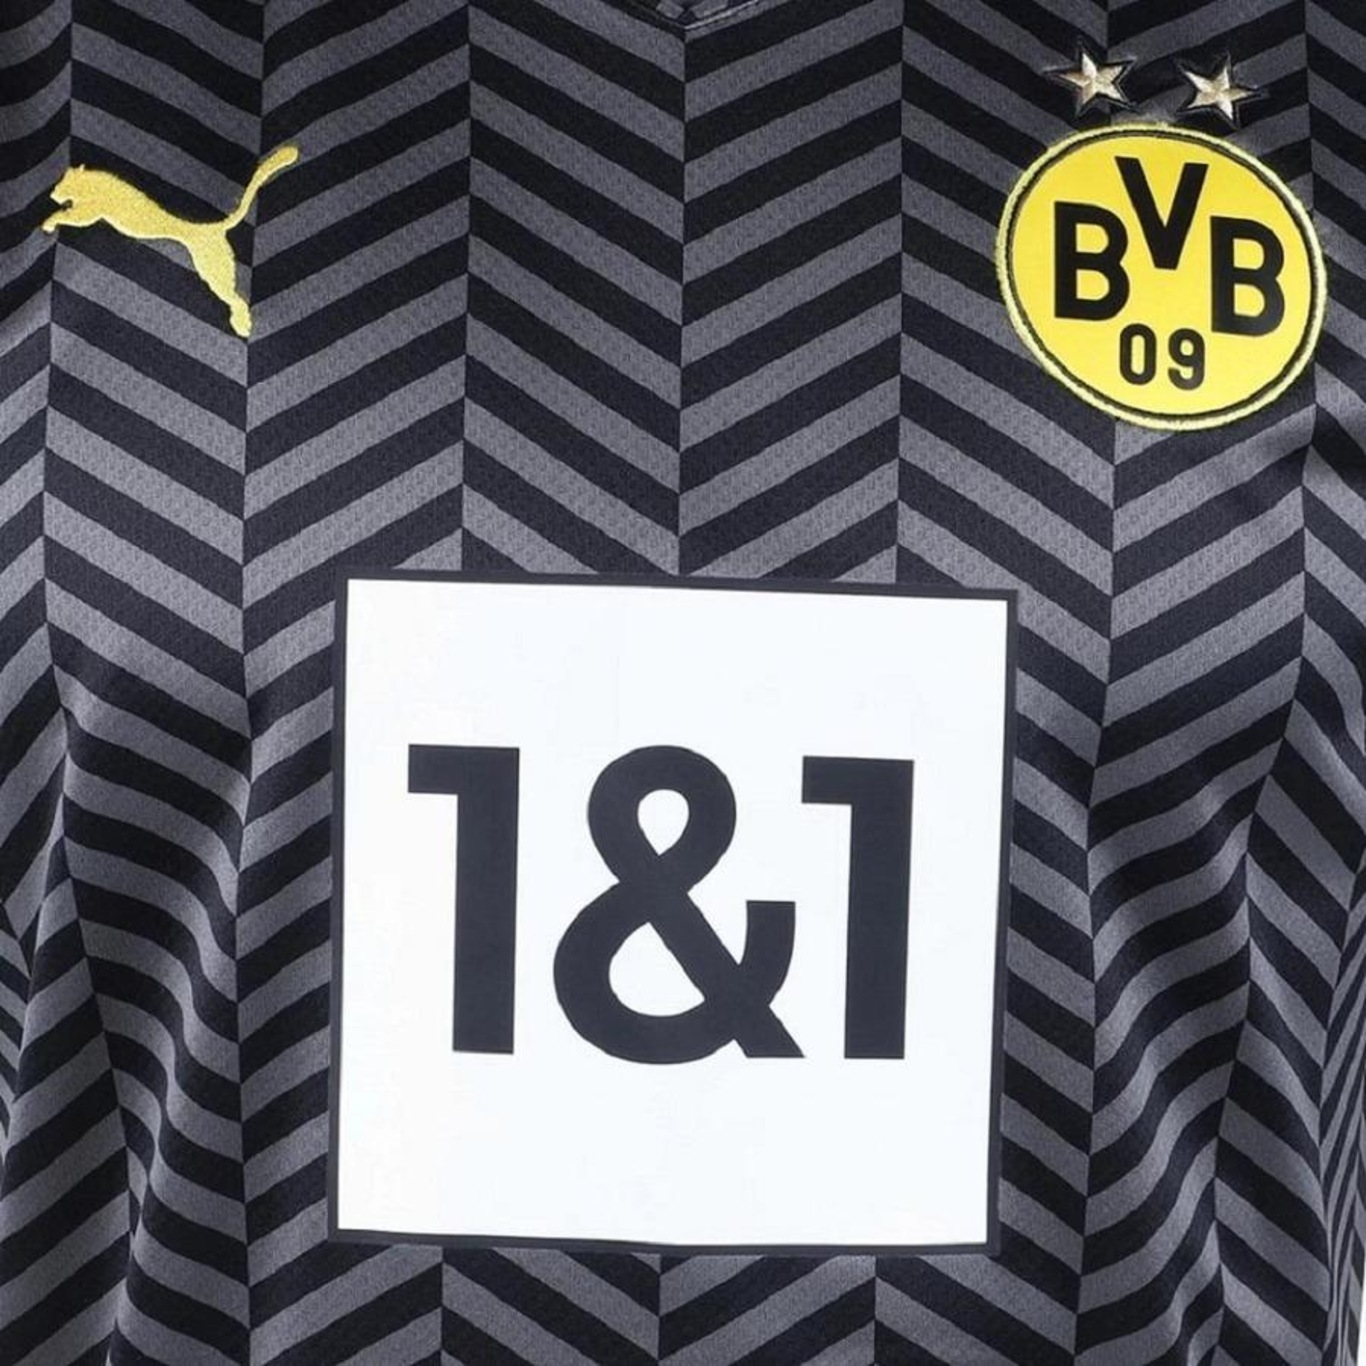 Camisa Borussia Dortmund II 21/22 Puma - Masculina - Foto 3